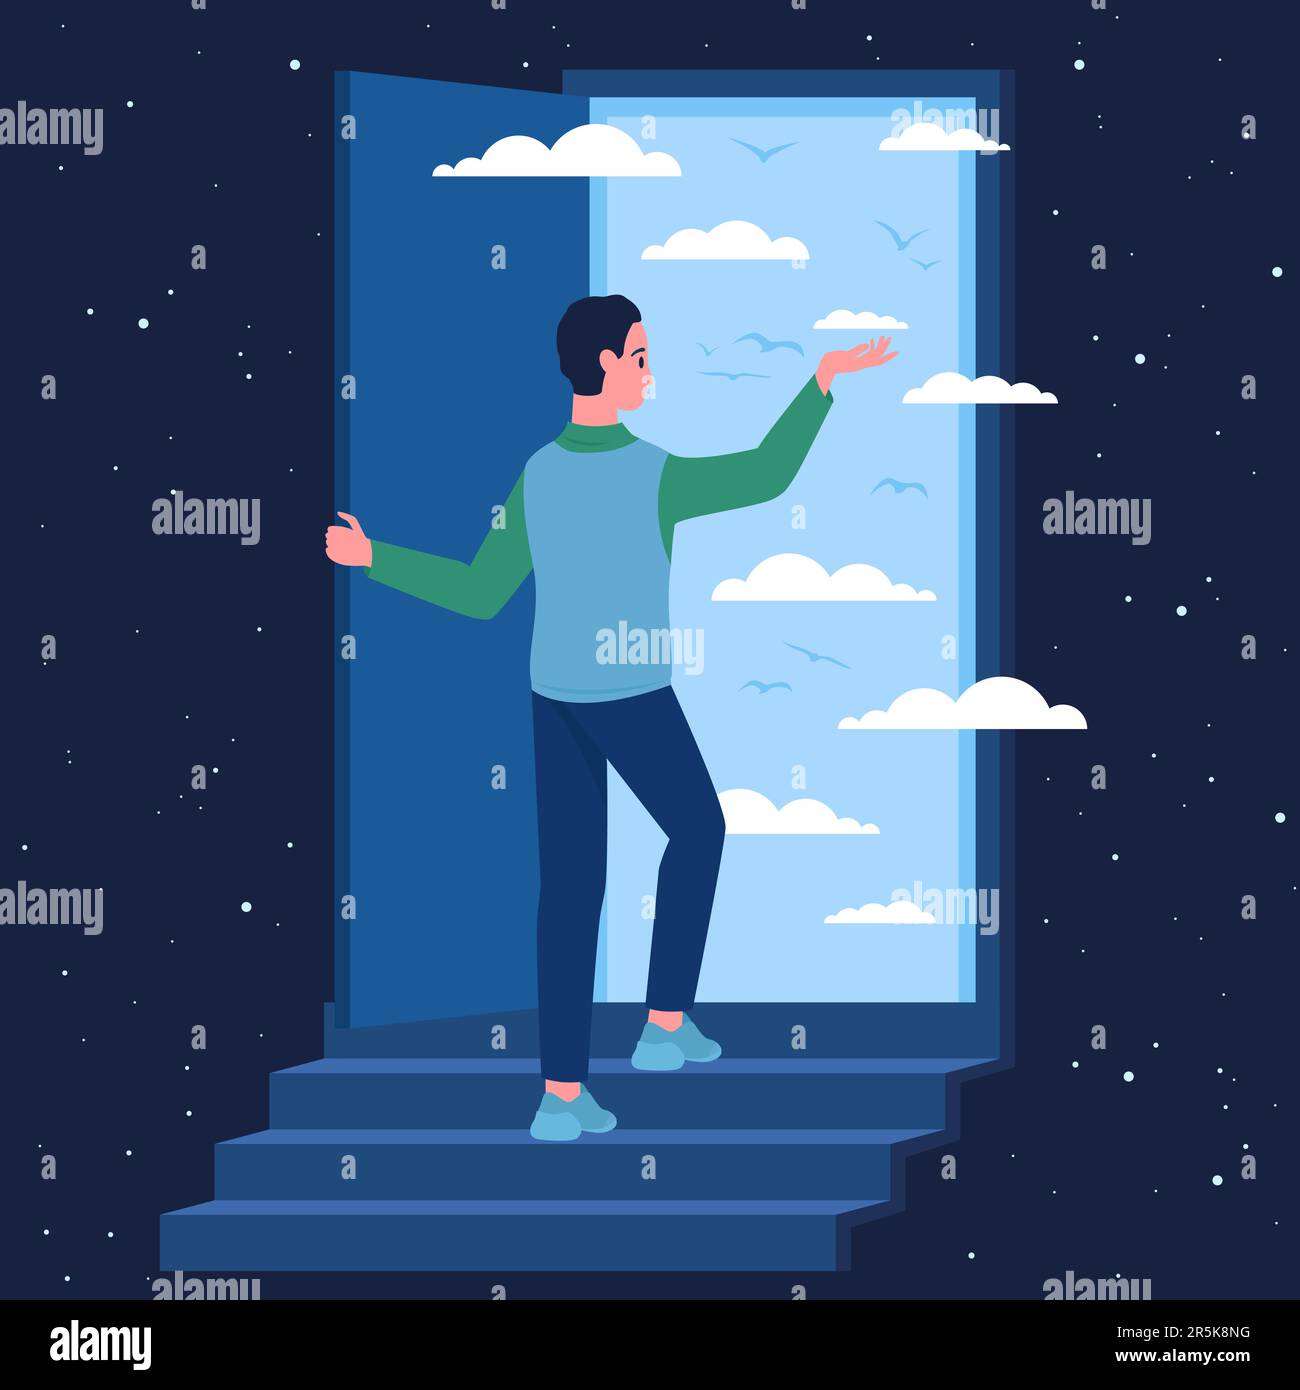 Fantasie, Psychologie und Weg zu unbekannten Zukunftskonzepten Vektordarstellung. Ein Cartoon-Mann steht auf einer Treppe vor der offenen Tür zum Himmel, Schönheit des blauen Sommerhimmels mit Wolken im Inneren der Tür Stock Vektor